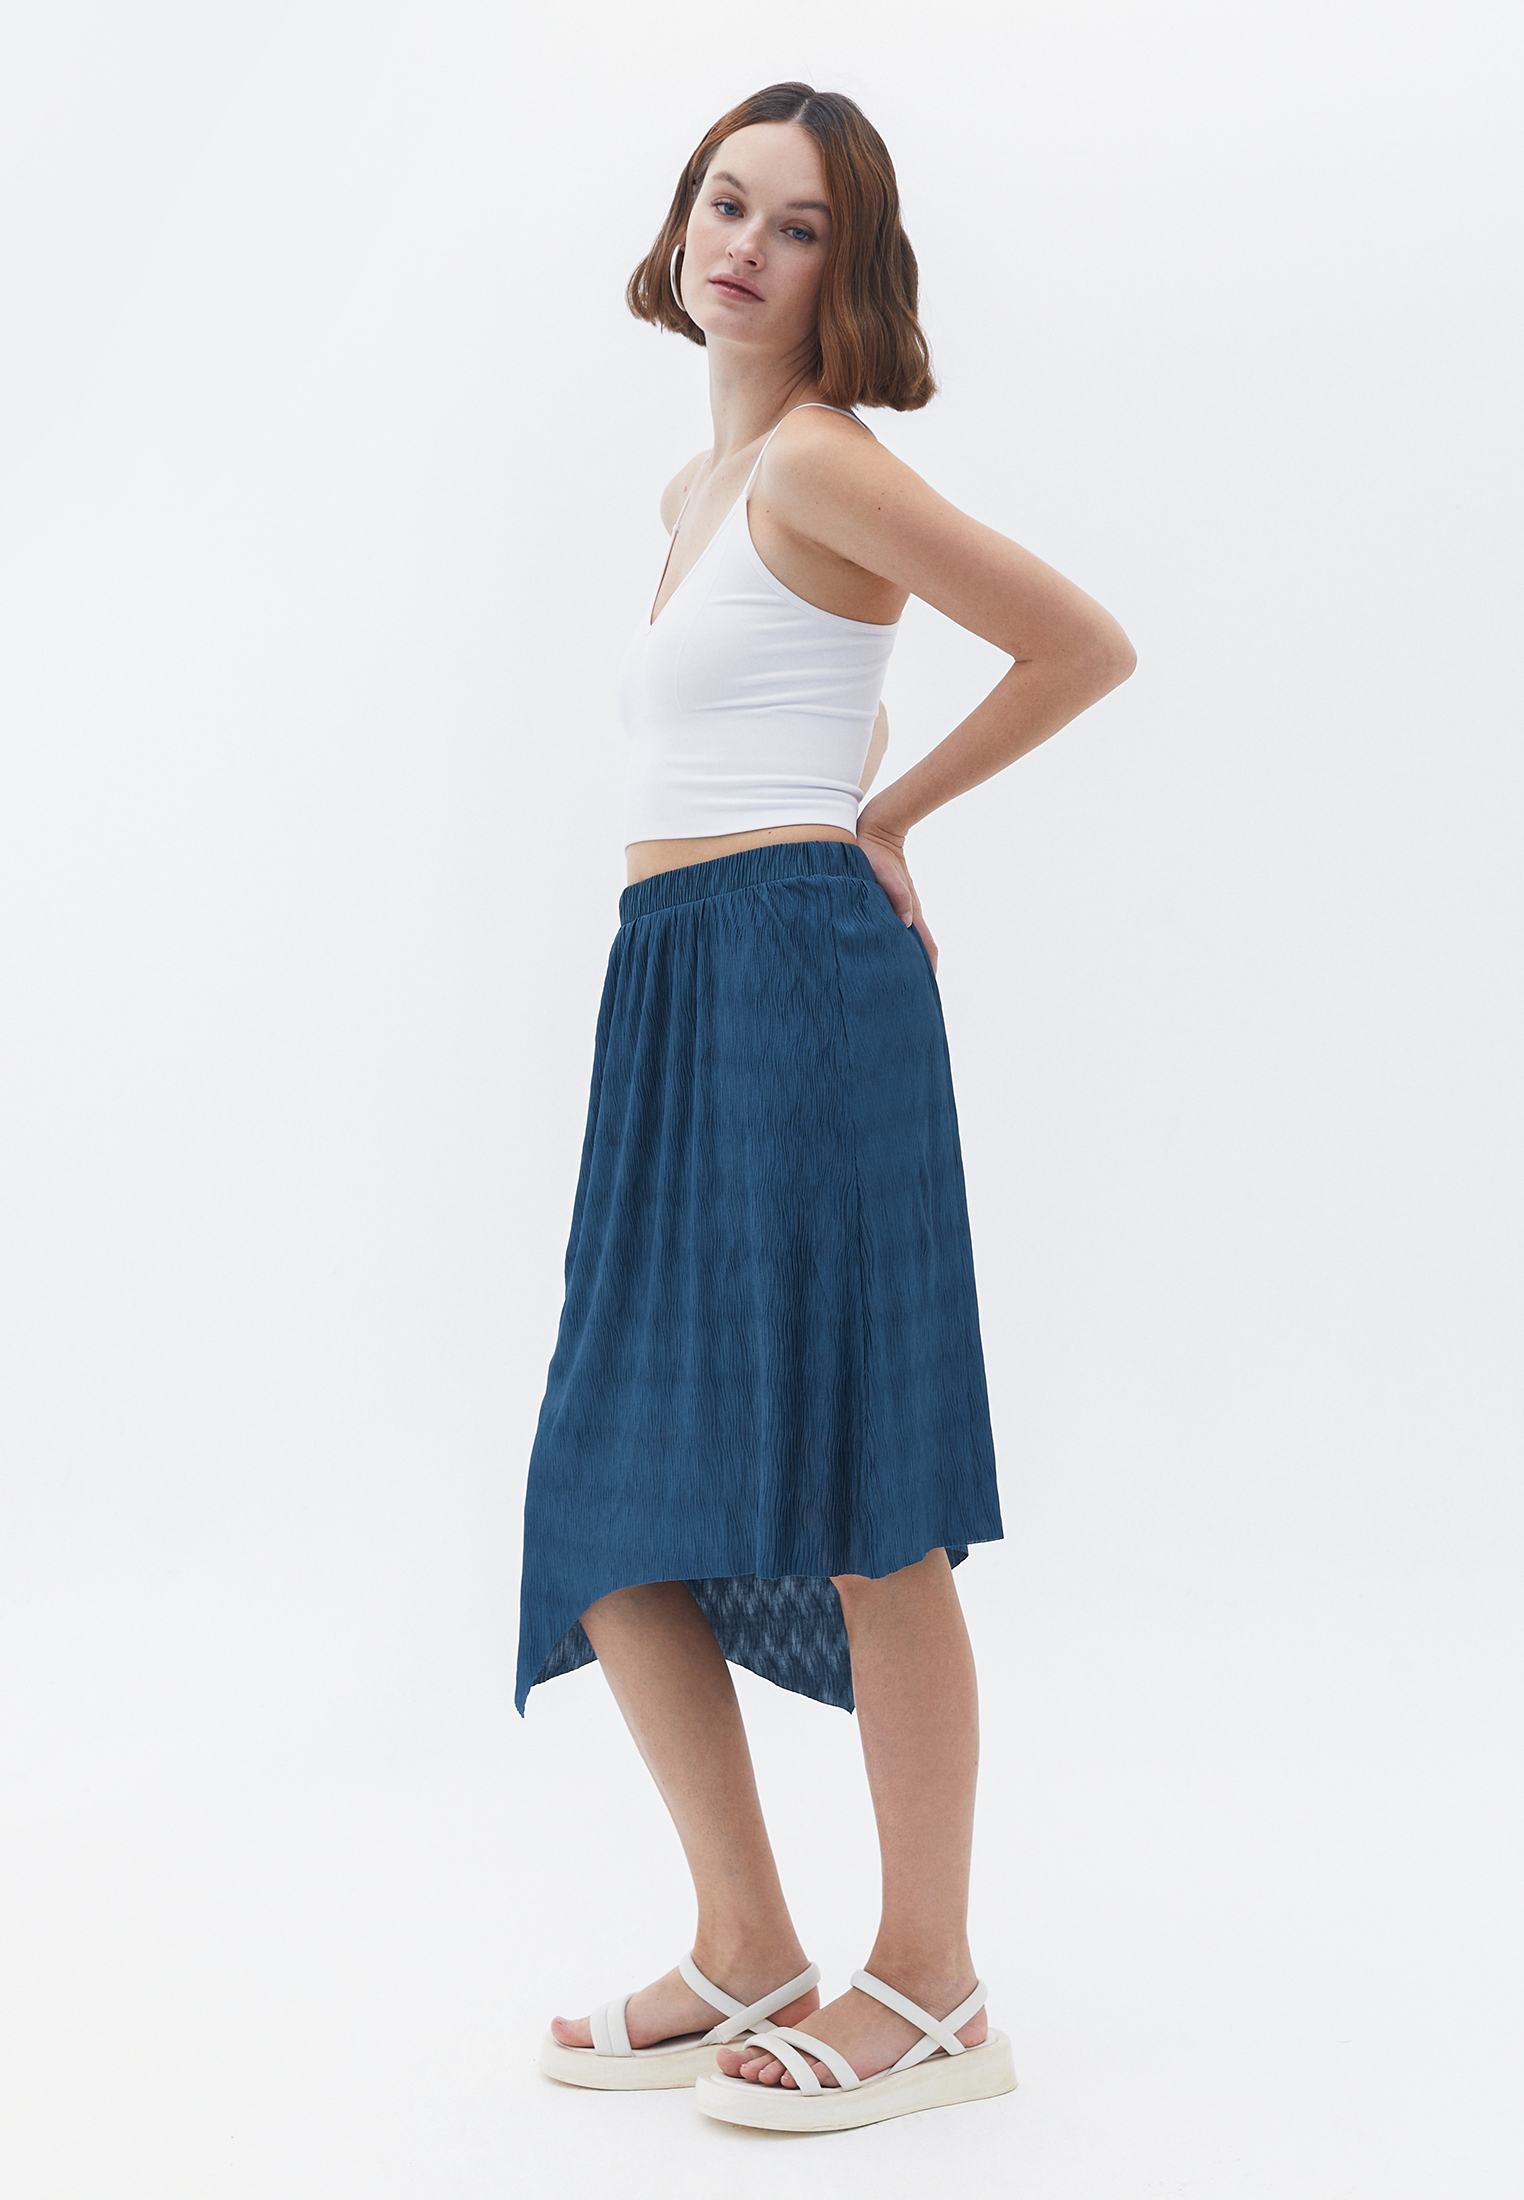 Women Green Long Asymmetric Skirt